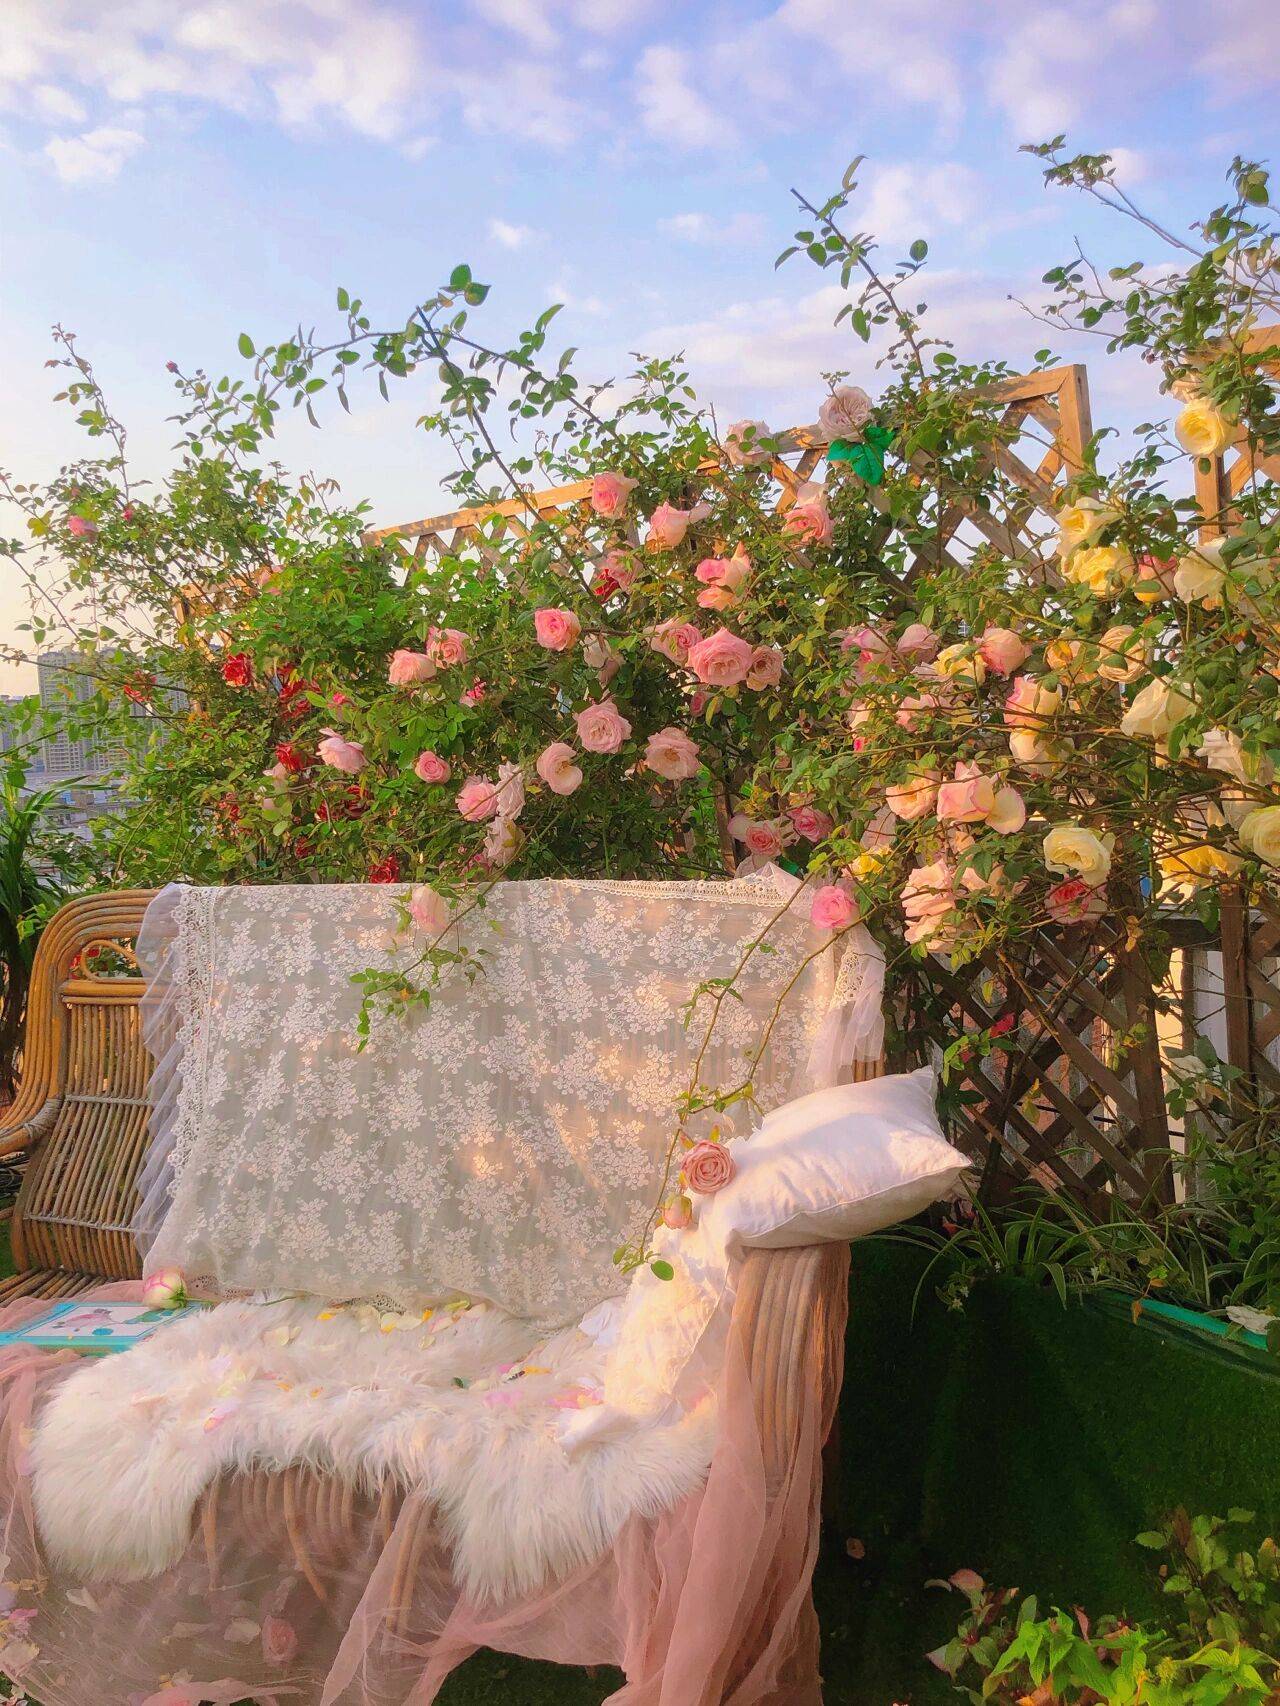 Đam mê với việc trồng hoa, cô gái 27 tuổi thuê nhà trên sân thượng để tạo ra khu vườn đẹp như tranh vẽ- Ảnh 8.